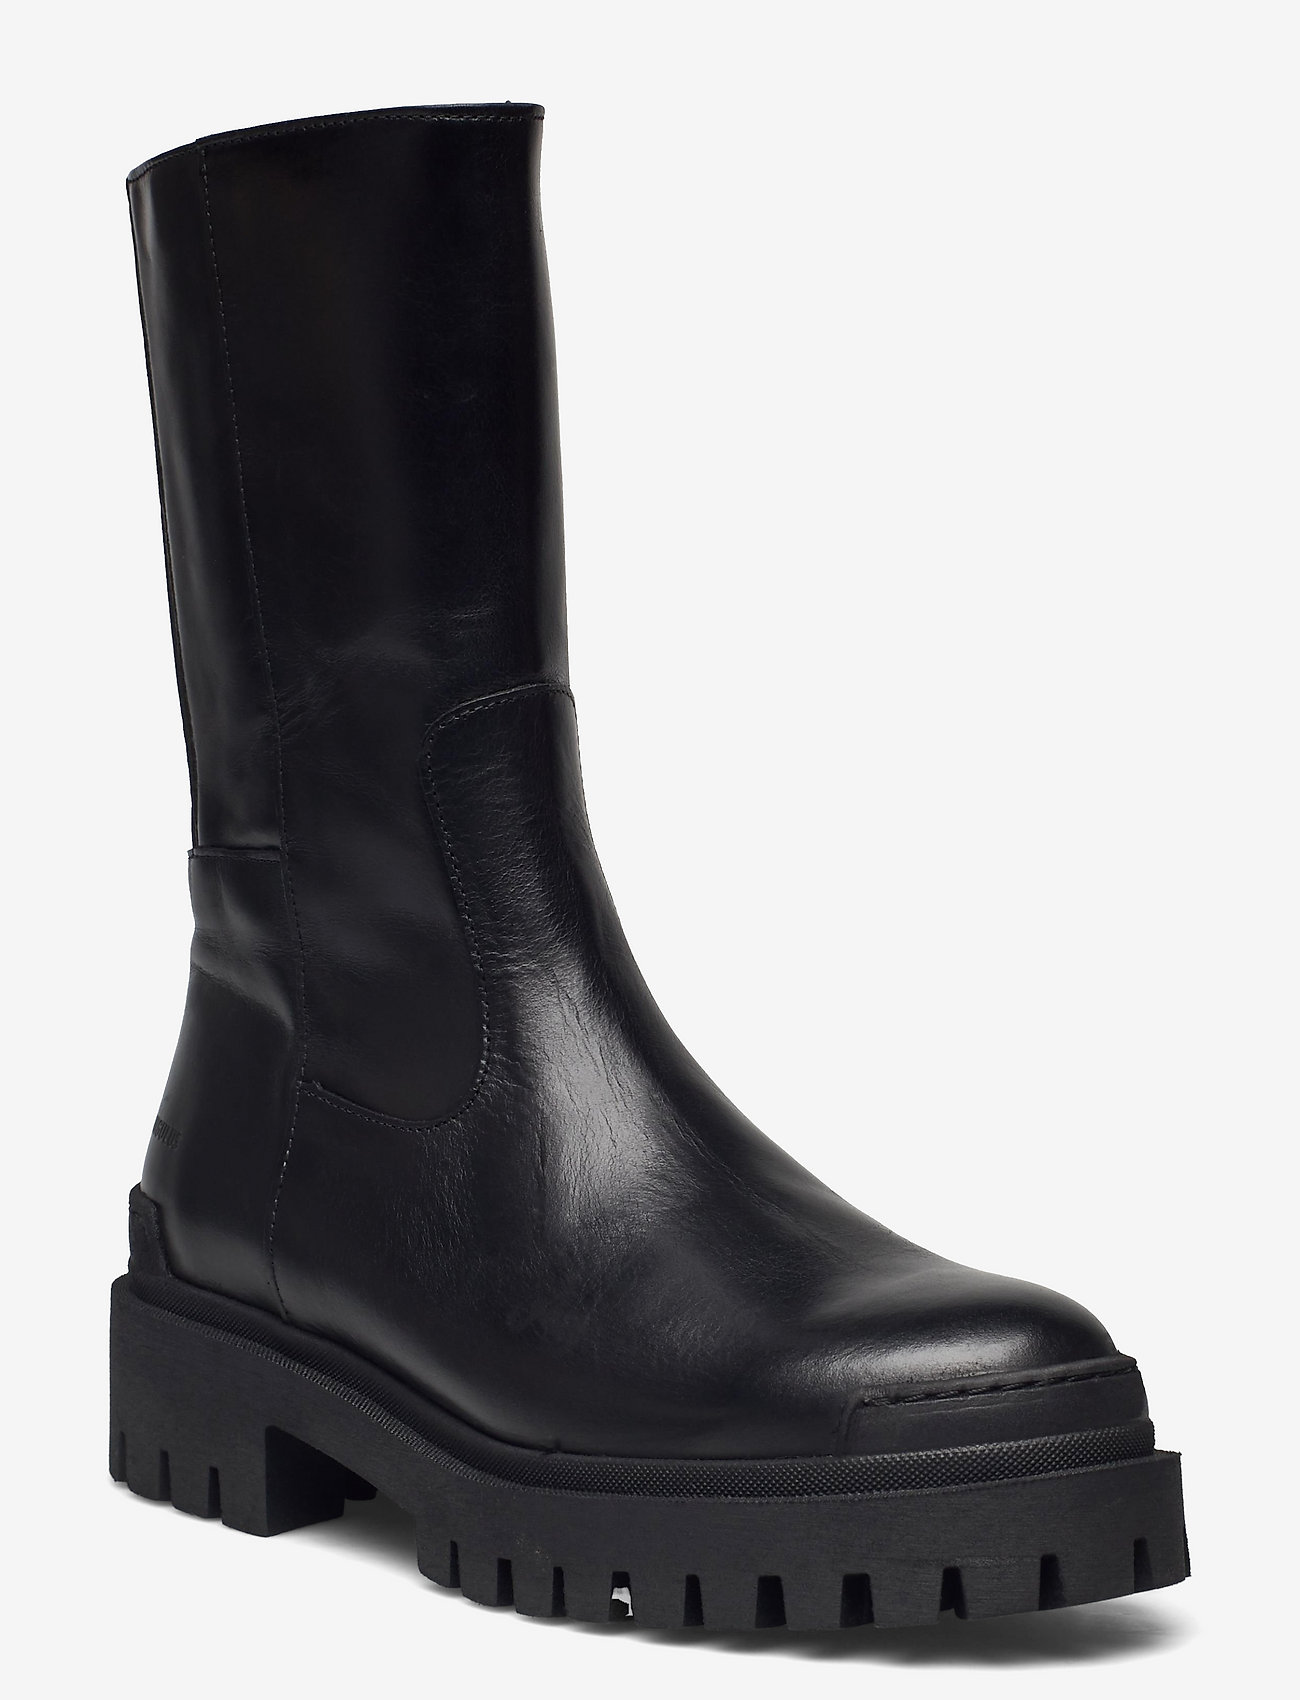 ANGULUS - Boots - flat - tasapohjaiset nilkkurit - 1835/019 black /black - 0